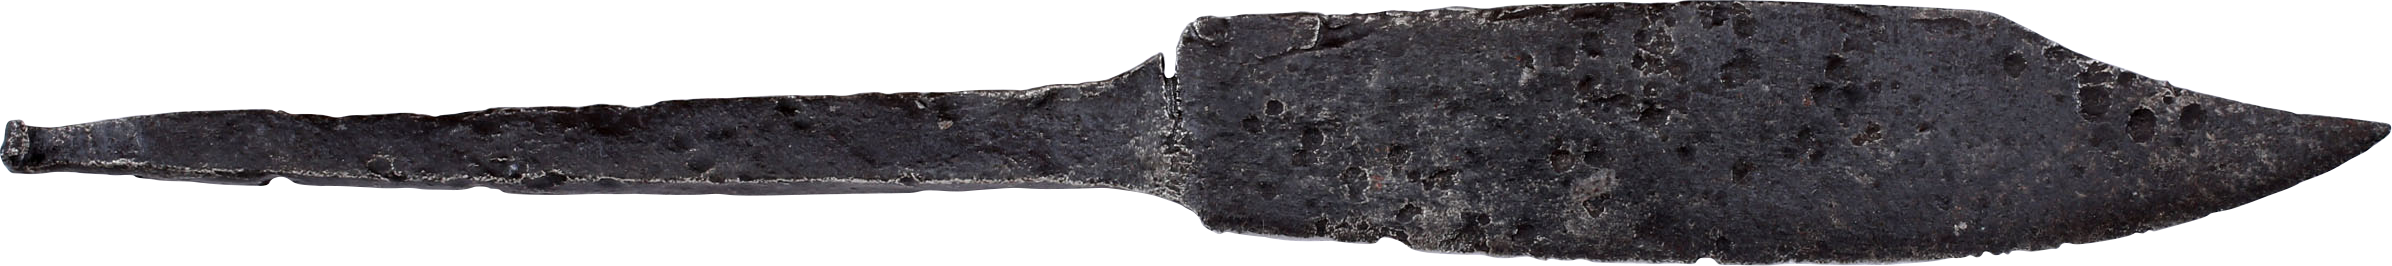 FINE VIKING SCRAMSASAX (SCRAMSAX) 850-1050 AD